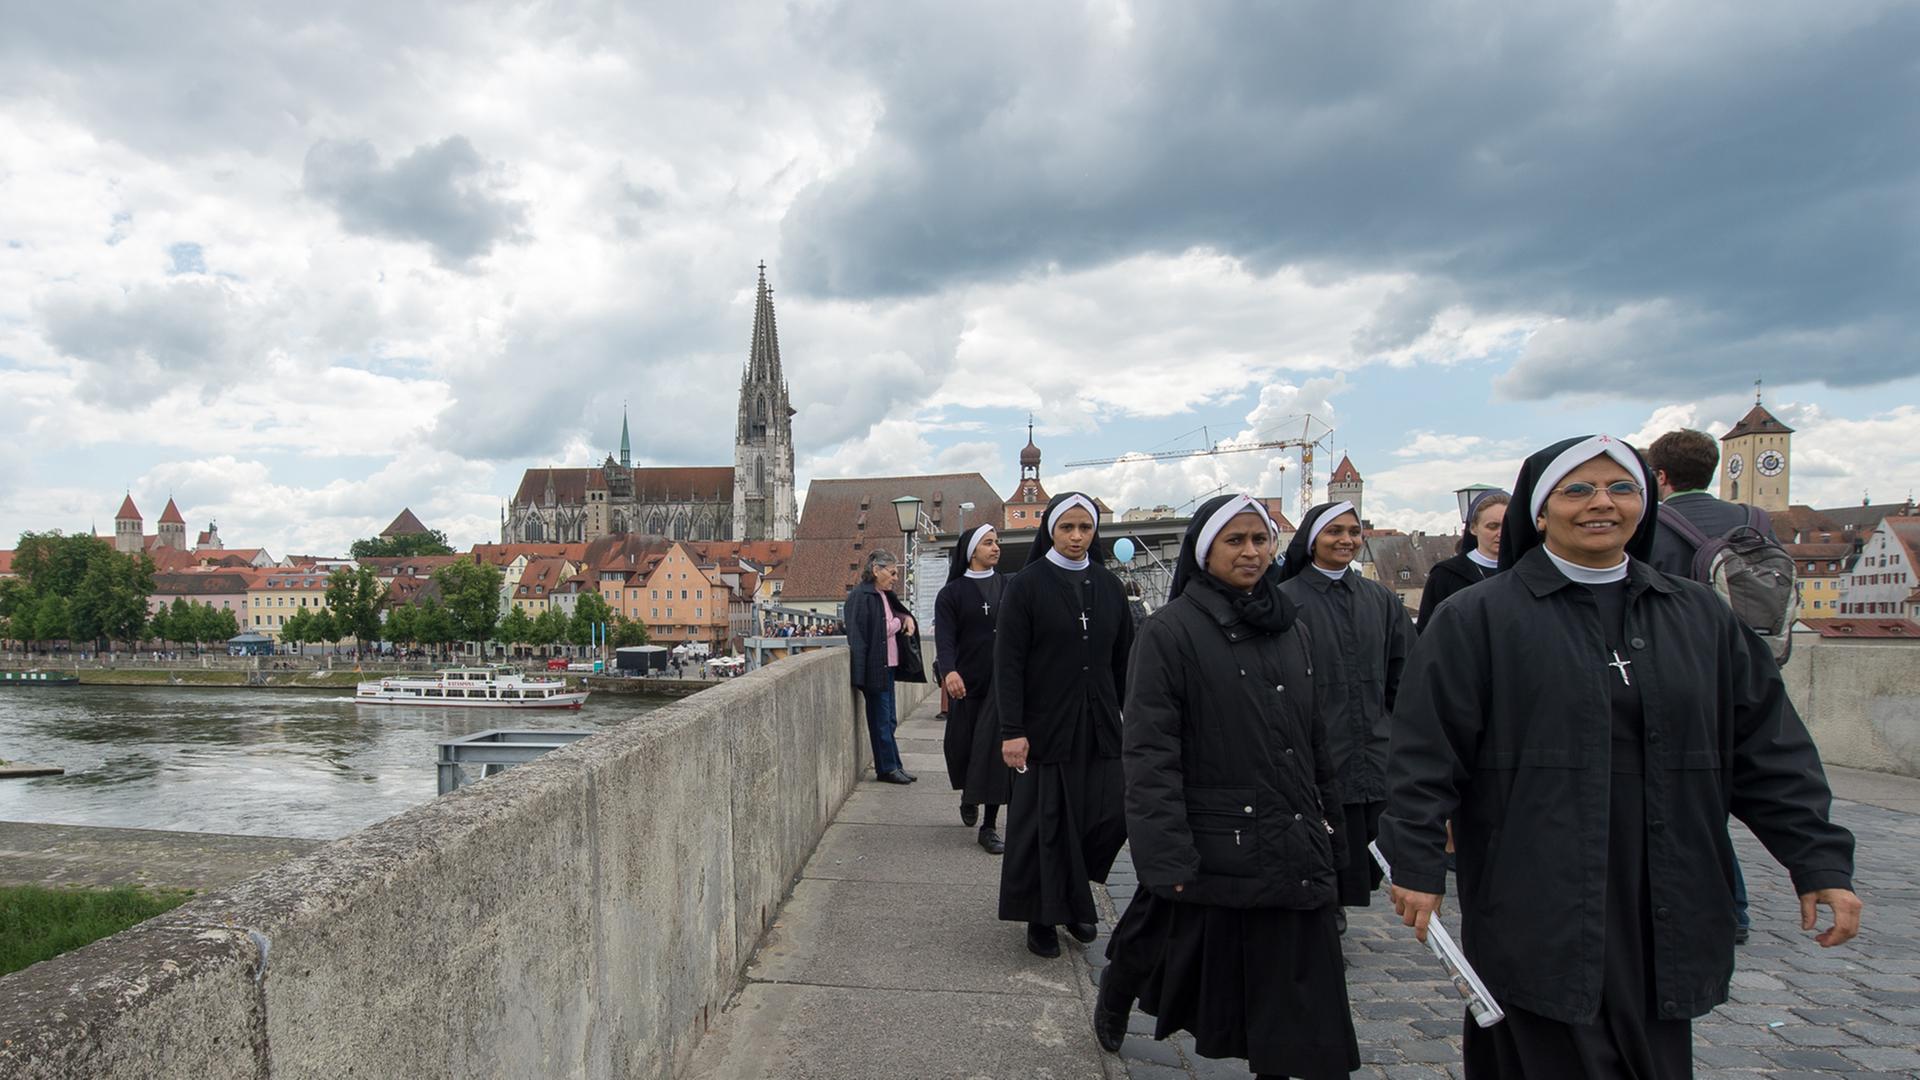 Ordensschwestern gehen am 31. Mai 2014 während des Katholikentags in Regensburg auf der Steinernen Brücke.